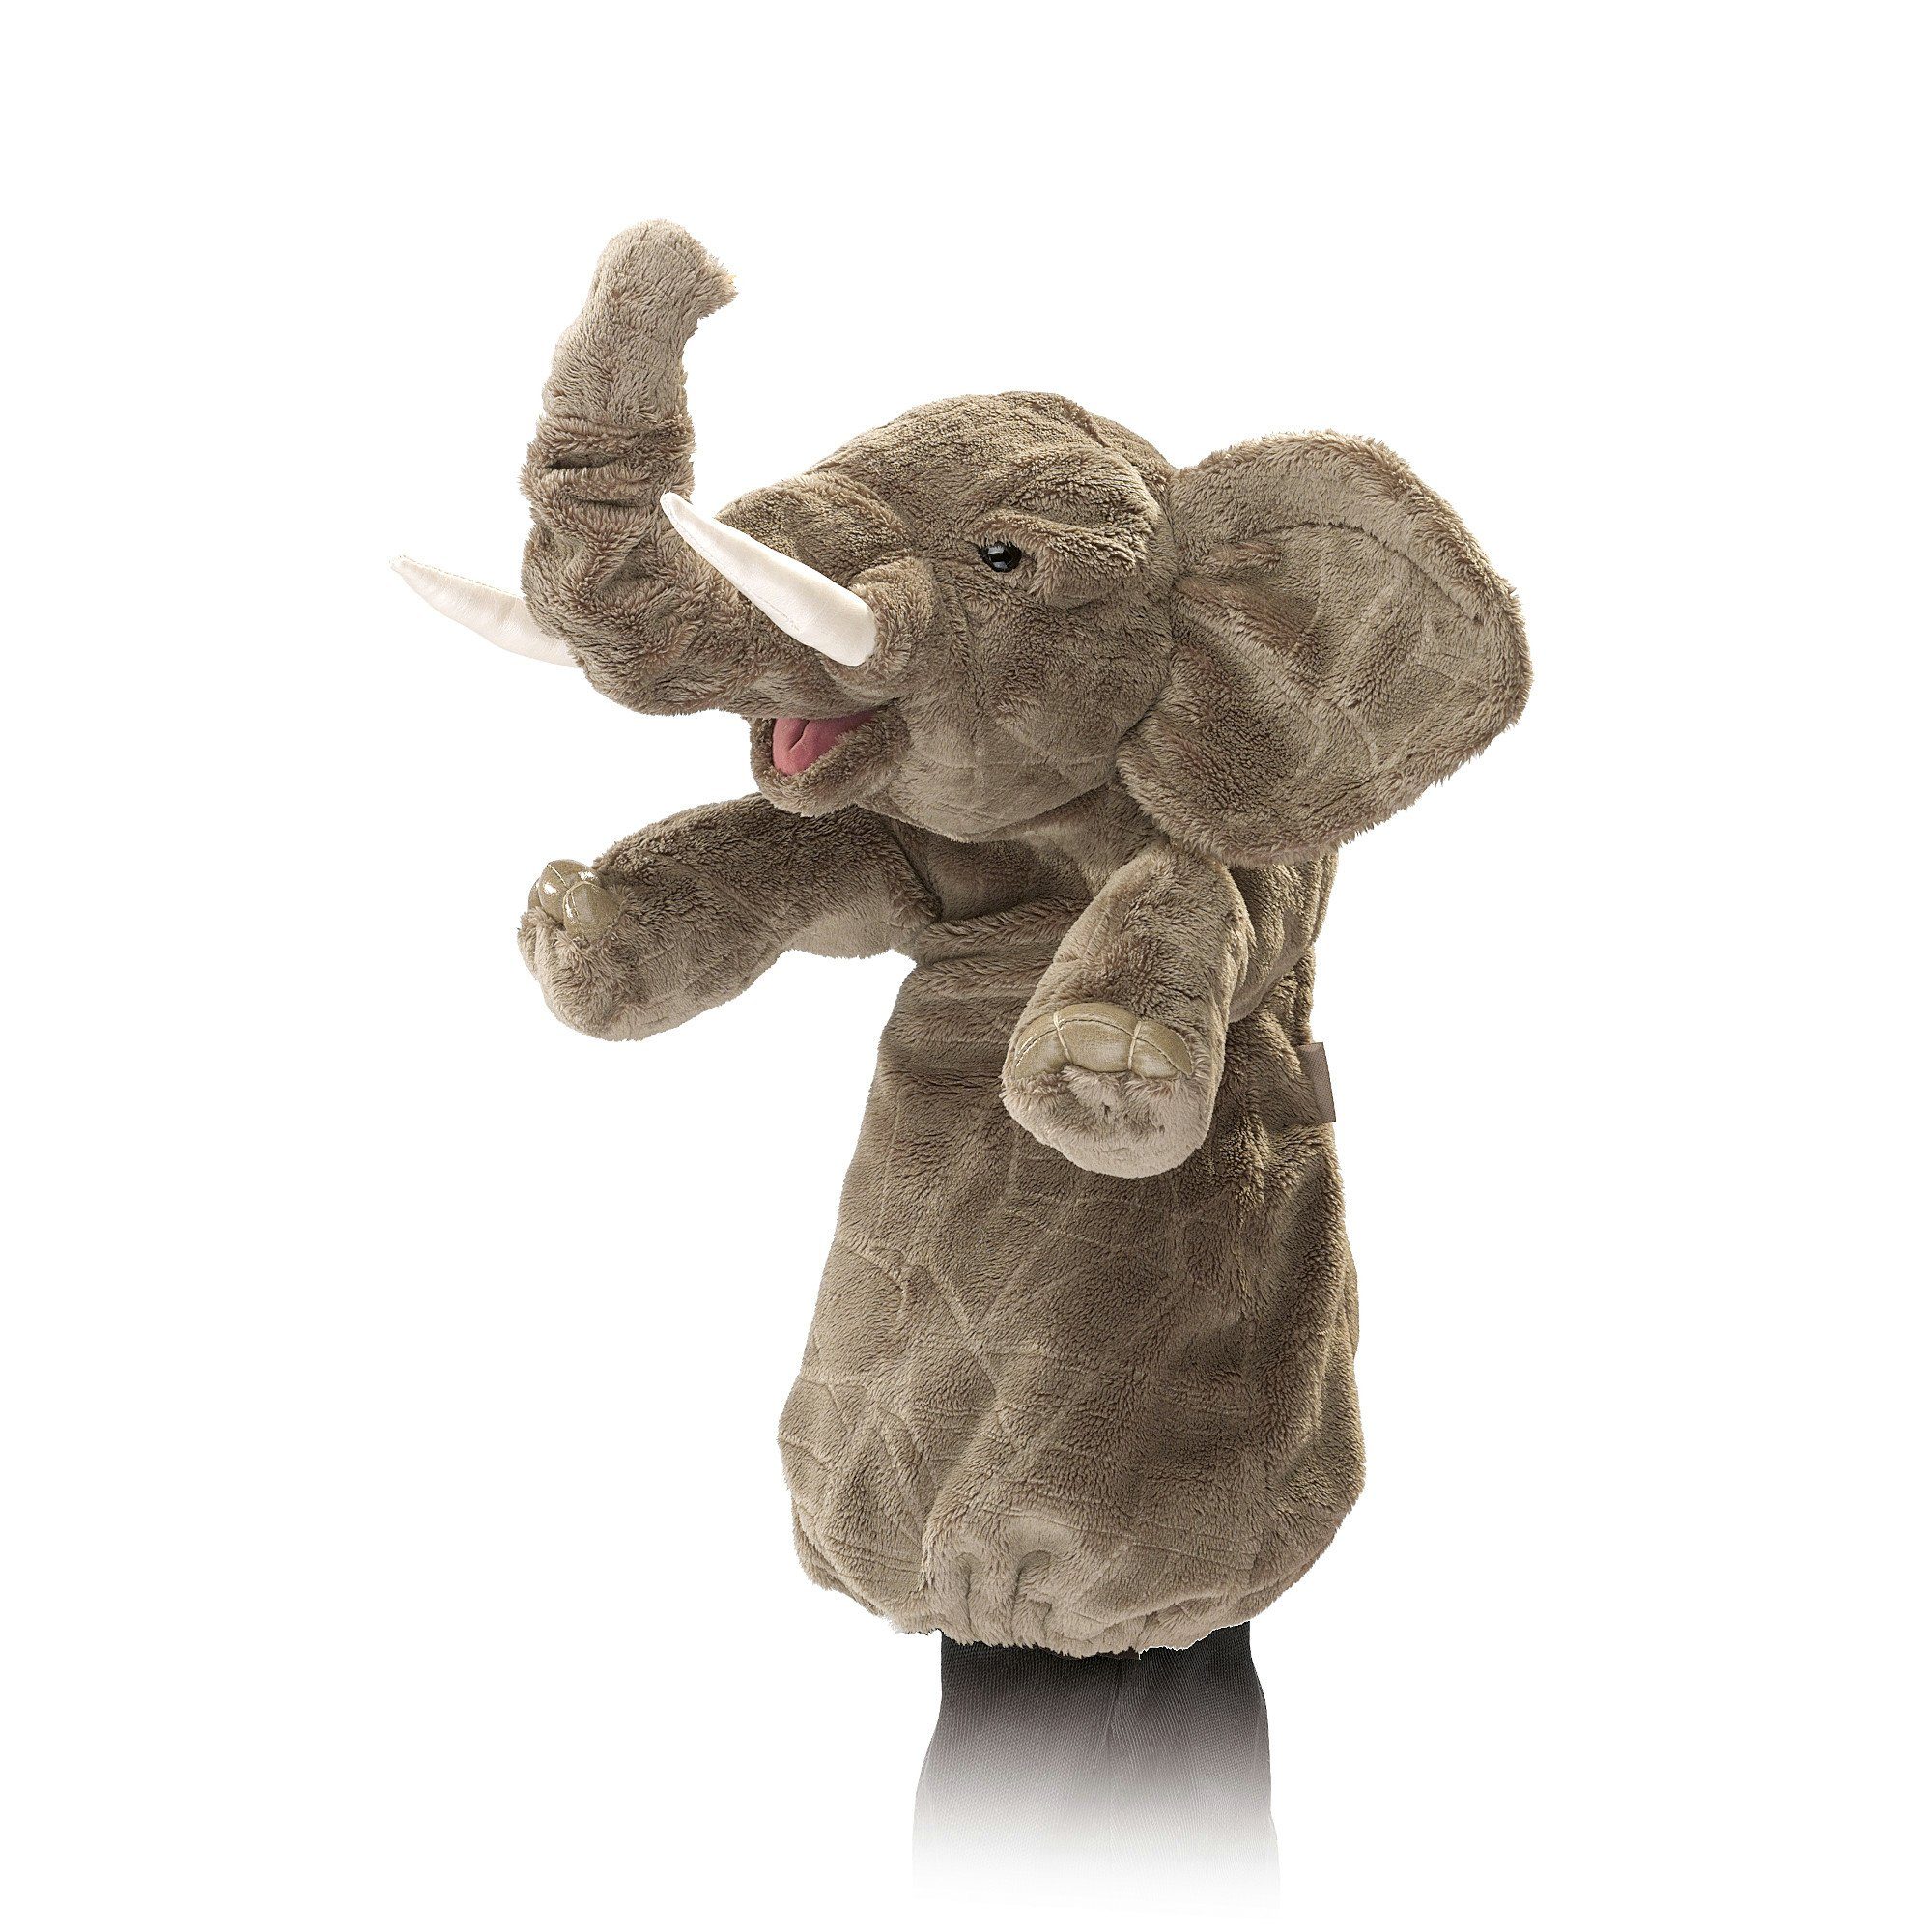 Folkmanis Handpuppen Handpuppe Folkmanis Handpuppe Elefant für die Puppenbühne 2830 (Packung)